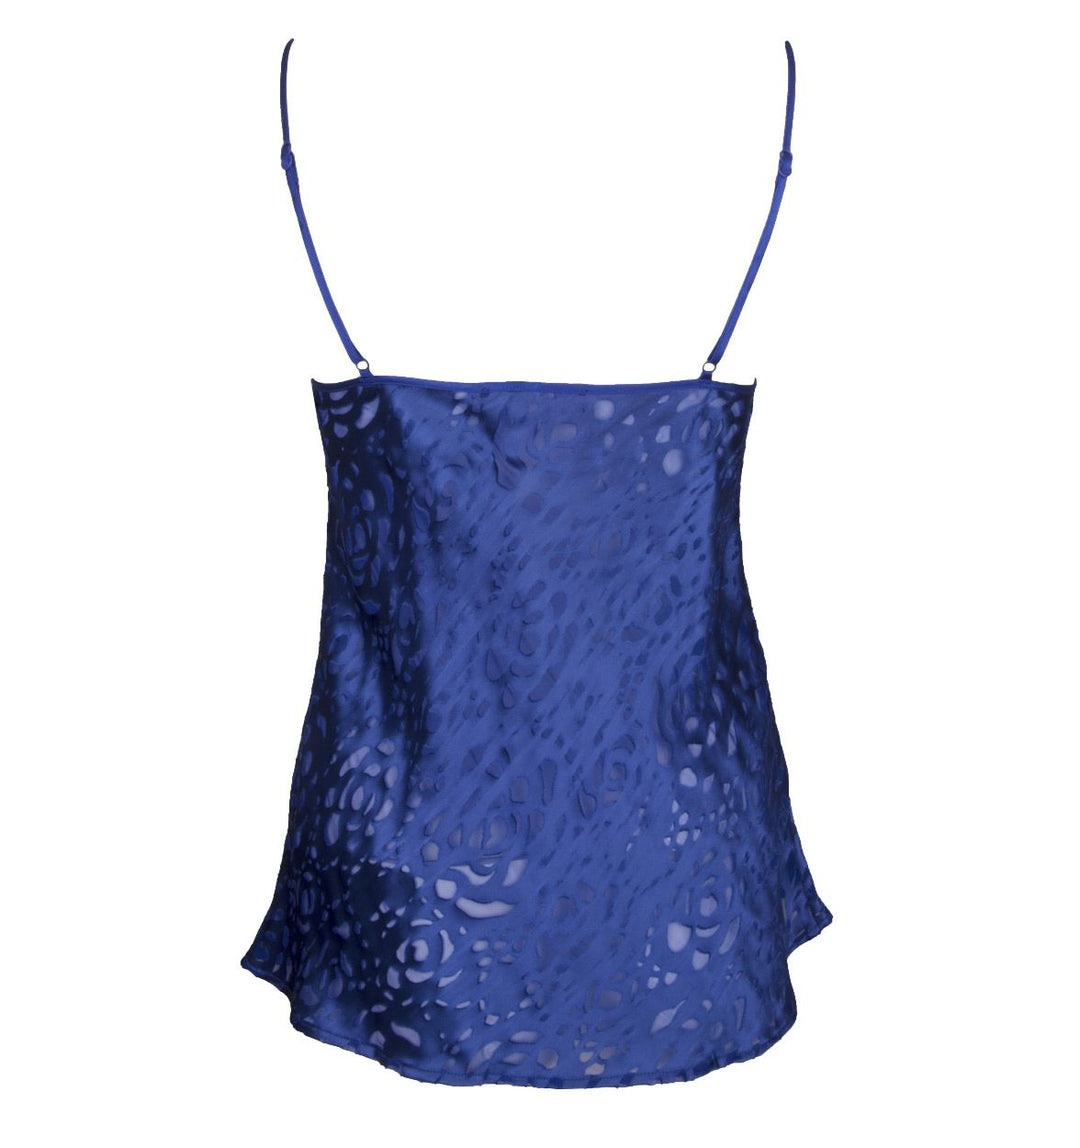 Лиз Чармел - Одевание лифчика с цветочным принтом Синее ночное белье Лиз Чармель